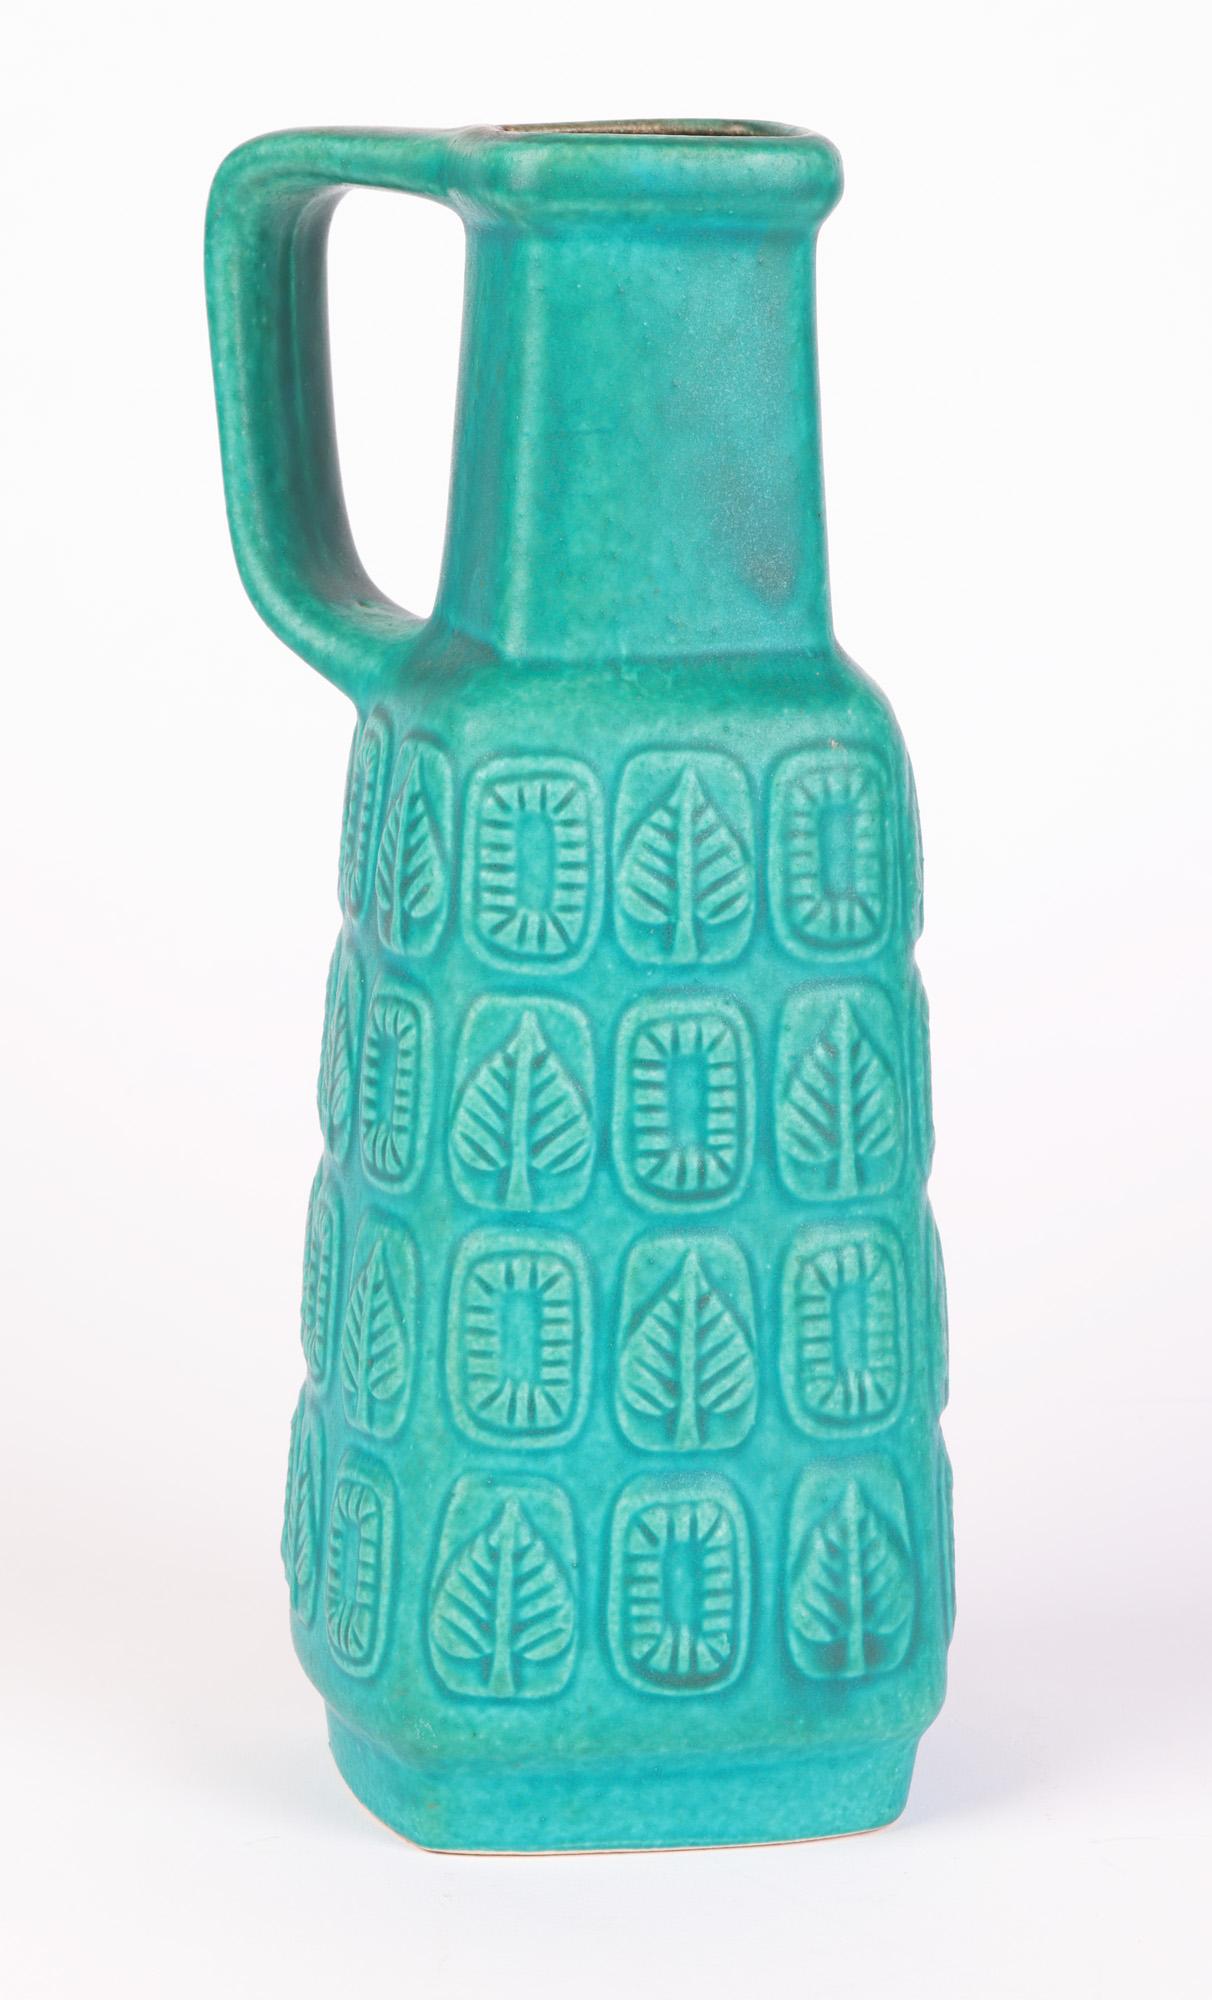 Bay Keramik German Mid-Century Turquoise Glazed Molded Pottery Vase 1